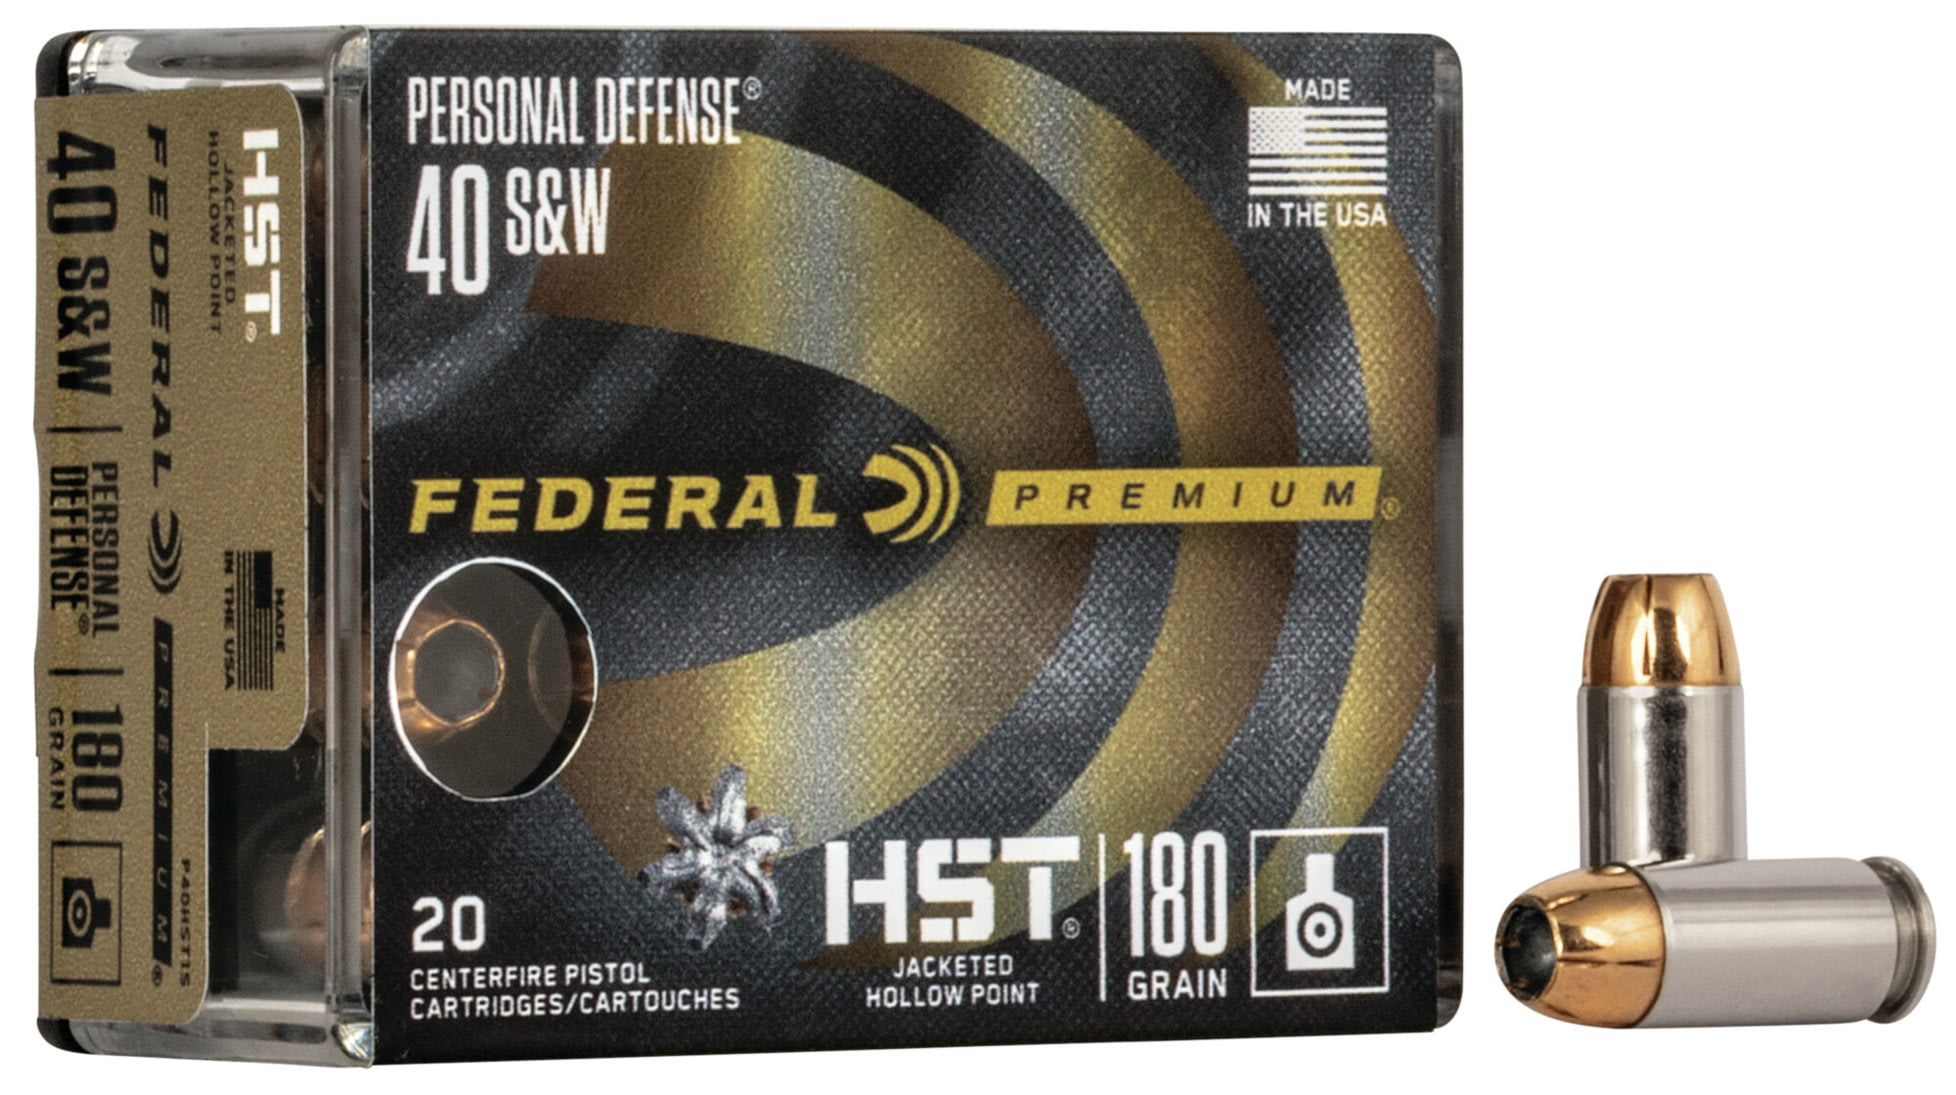 Federal Premium Centerfire Handgun Ammunition .40 S&W 180 grain HST Jacketed Hollow Point Centerfire Pistol Ammunition